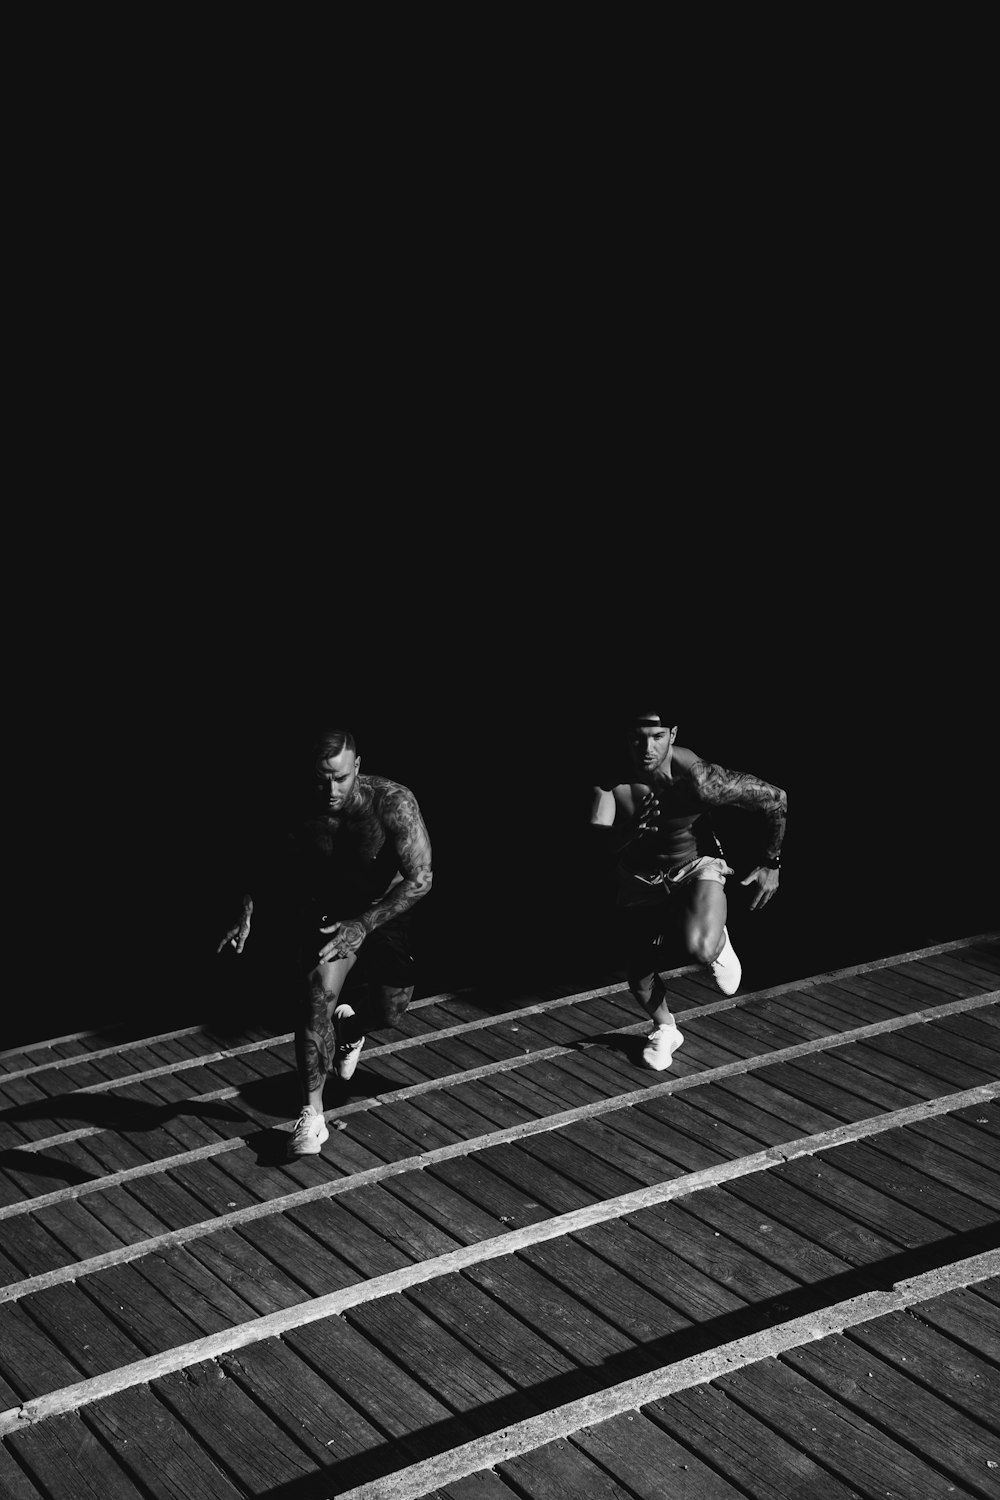 서로 경주하는 두 남자의 회색조 사진